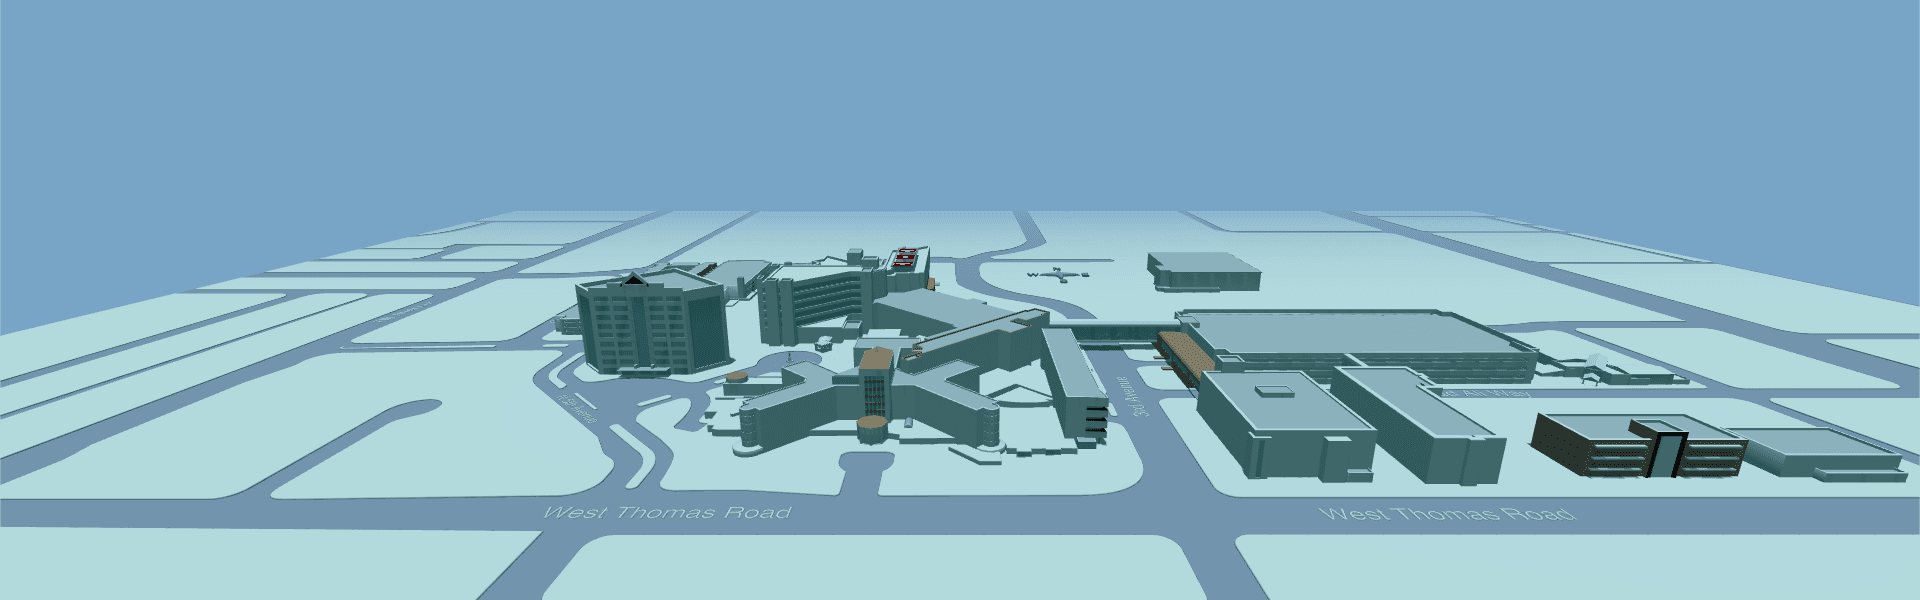 Barrow Neurological Institute campus in 3D